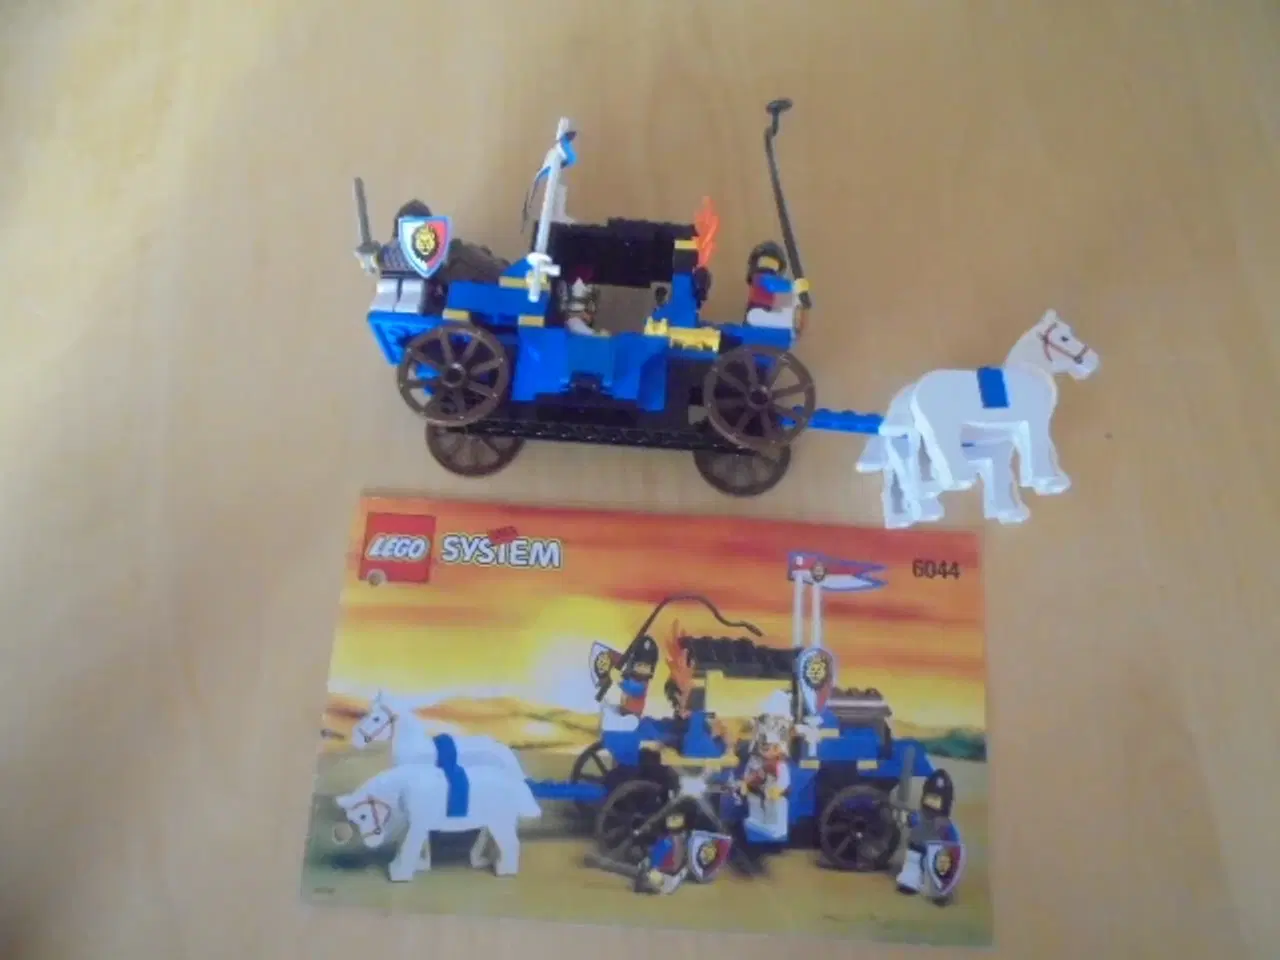 Billede 1 - LEGO 6044 - King's Carriage   